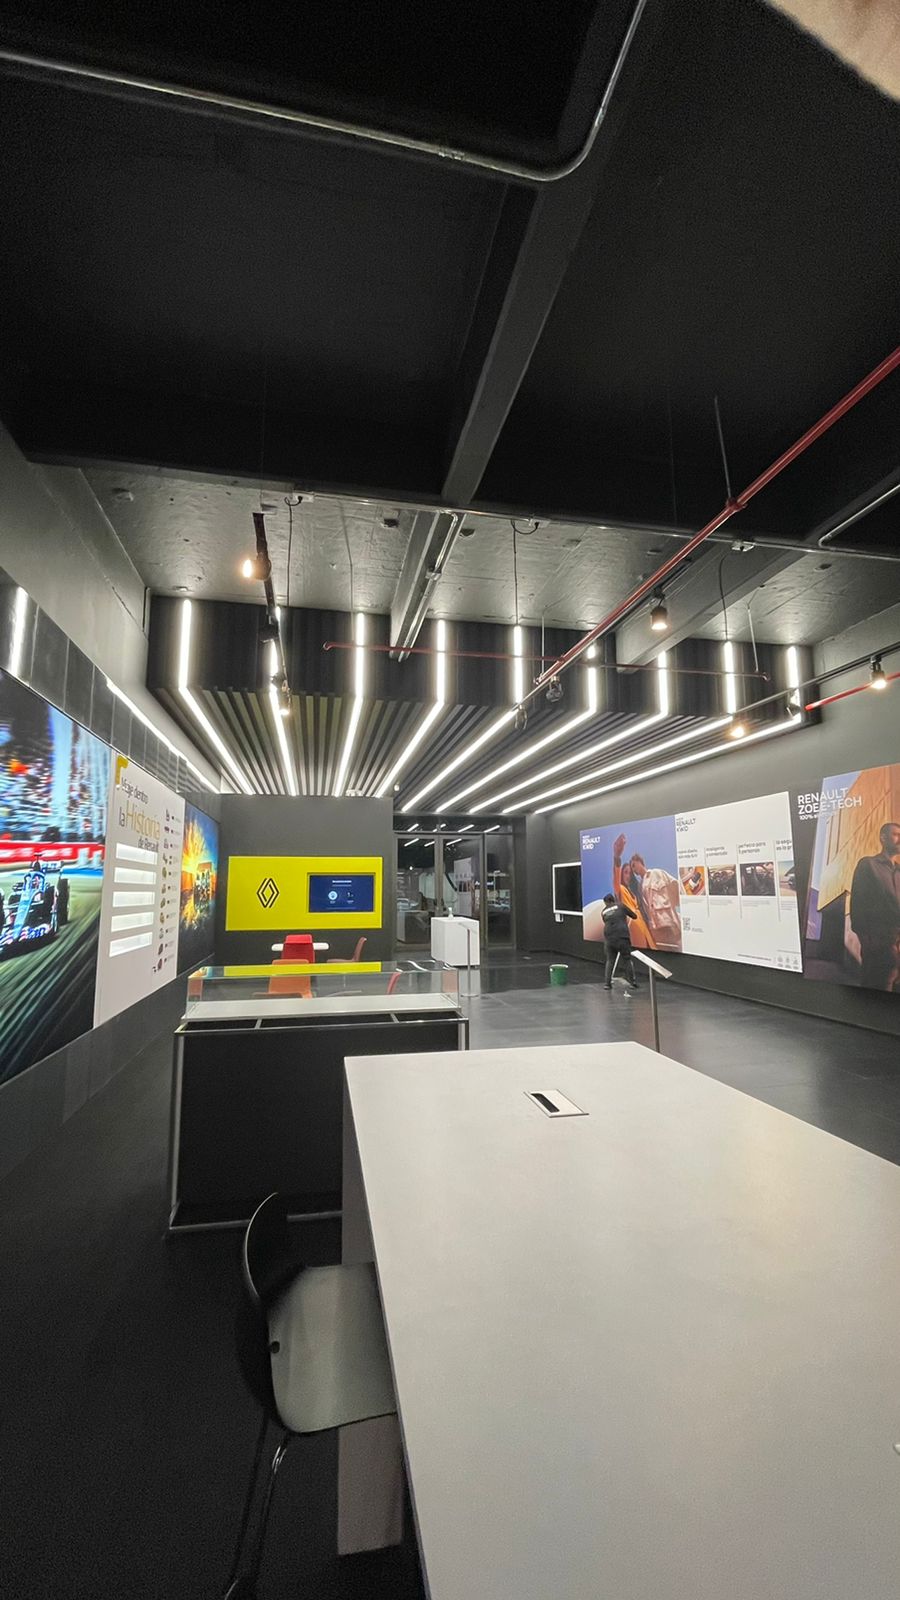 Sanautos abre la primera sala interactiva de ventas en Usaquén